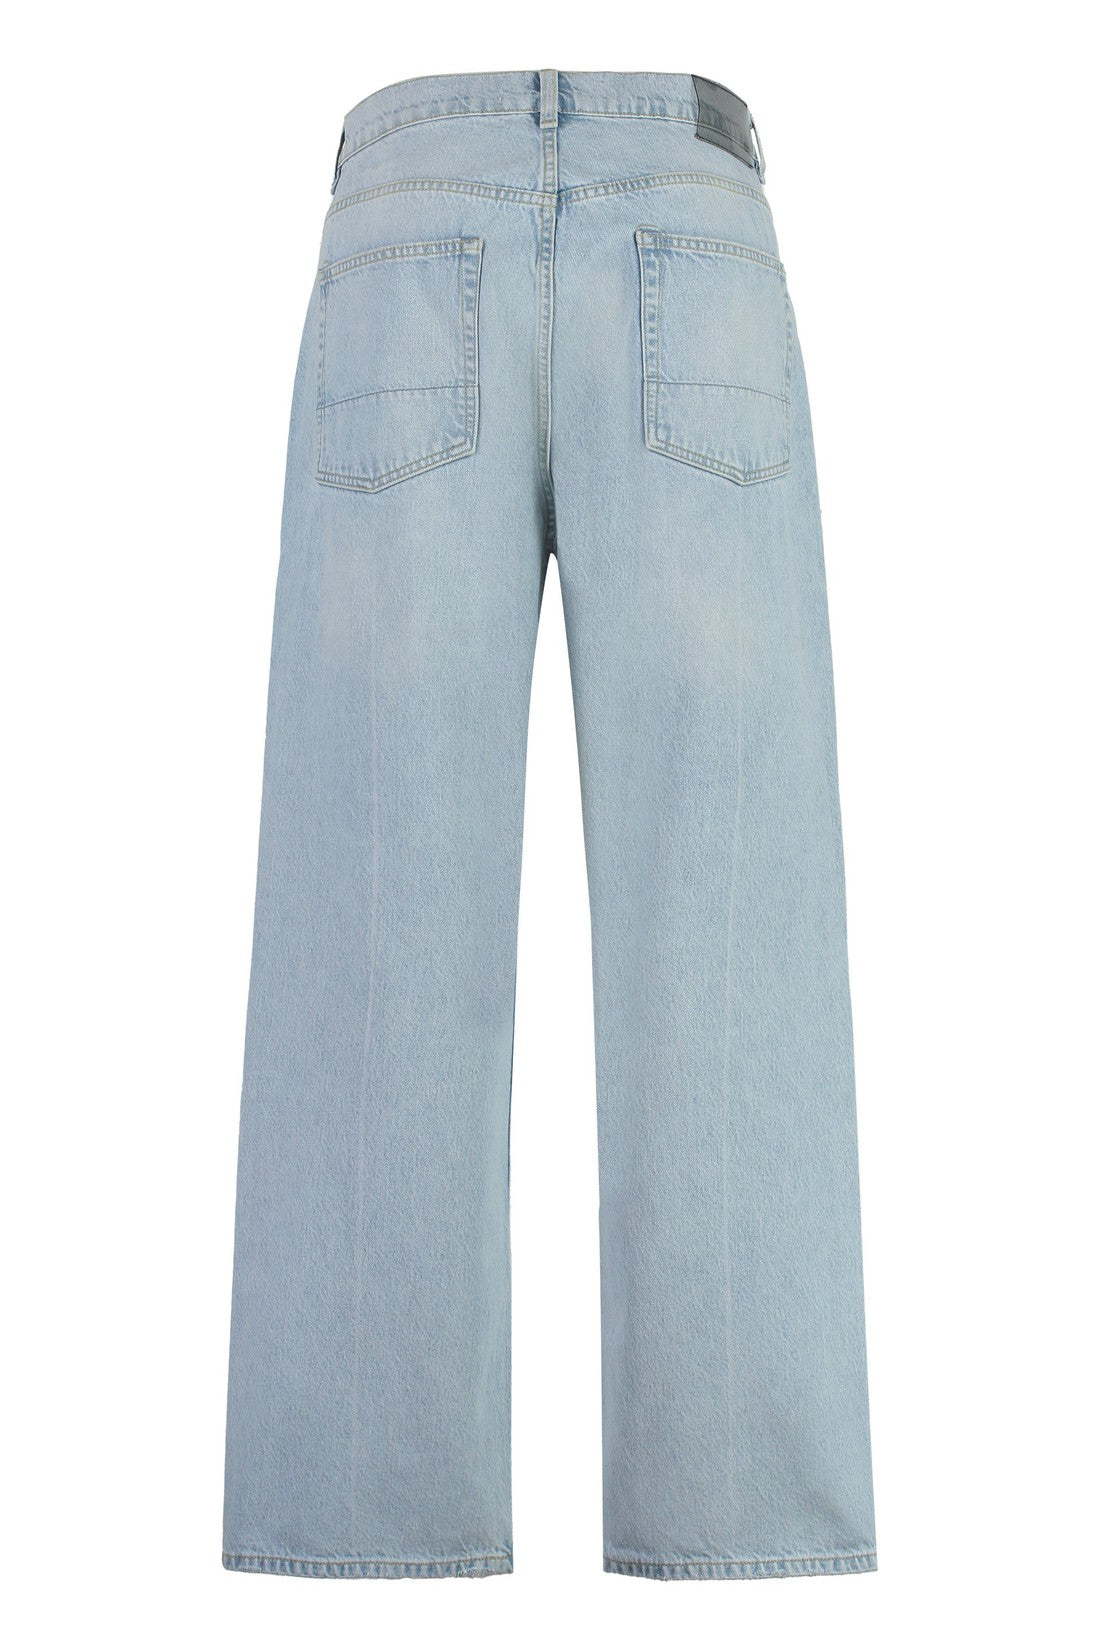 Our Legacy-OUTLET-SALE-Third Cut5-pocket jeans-ARCHIVIST